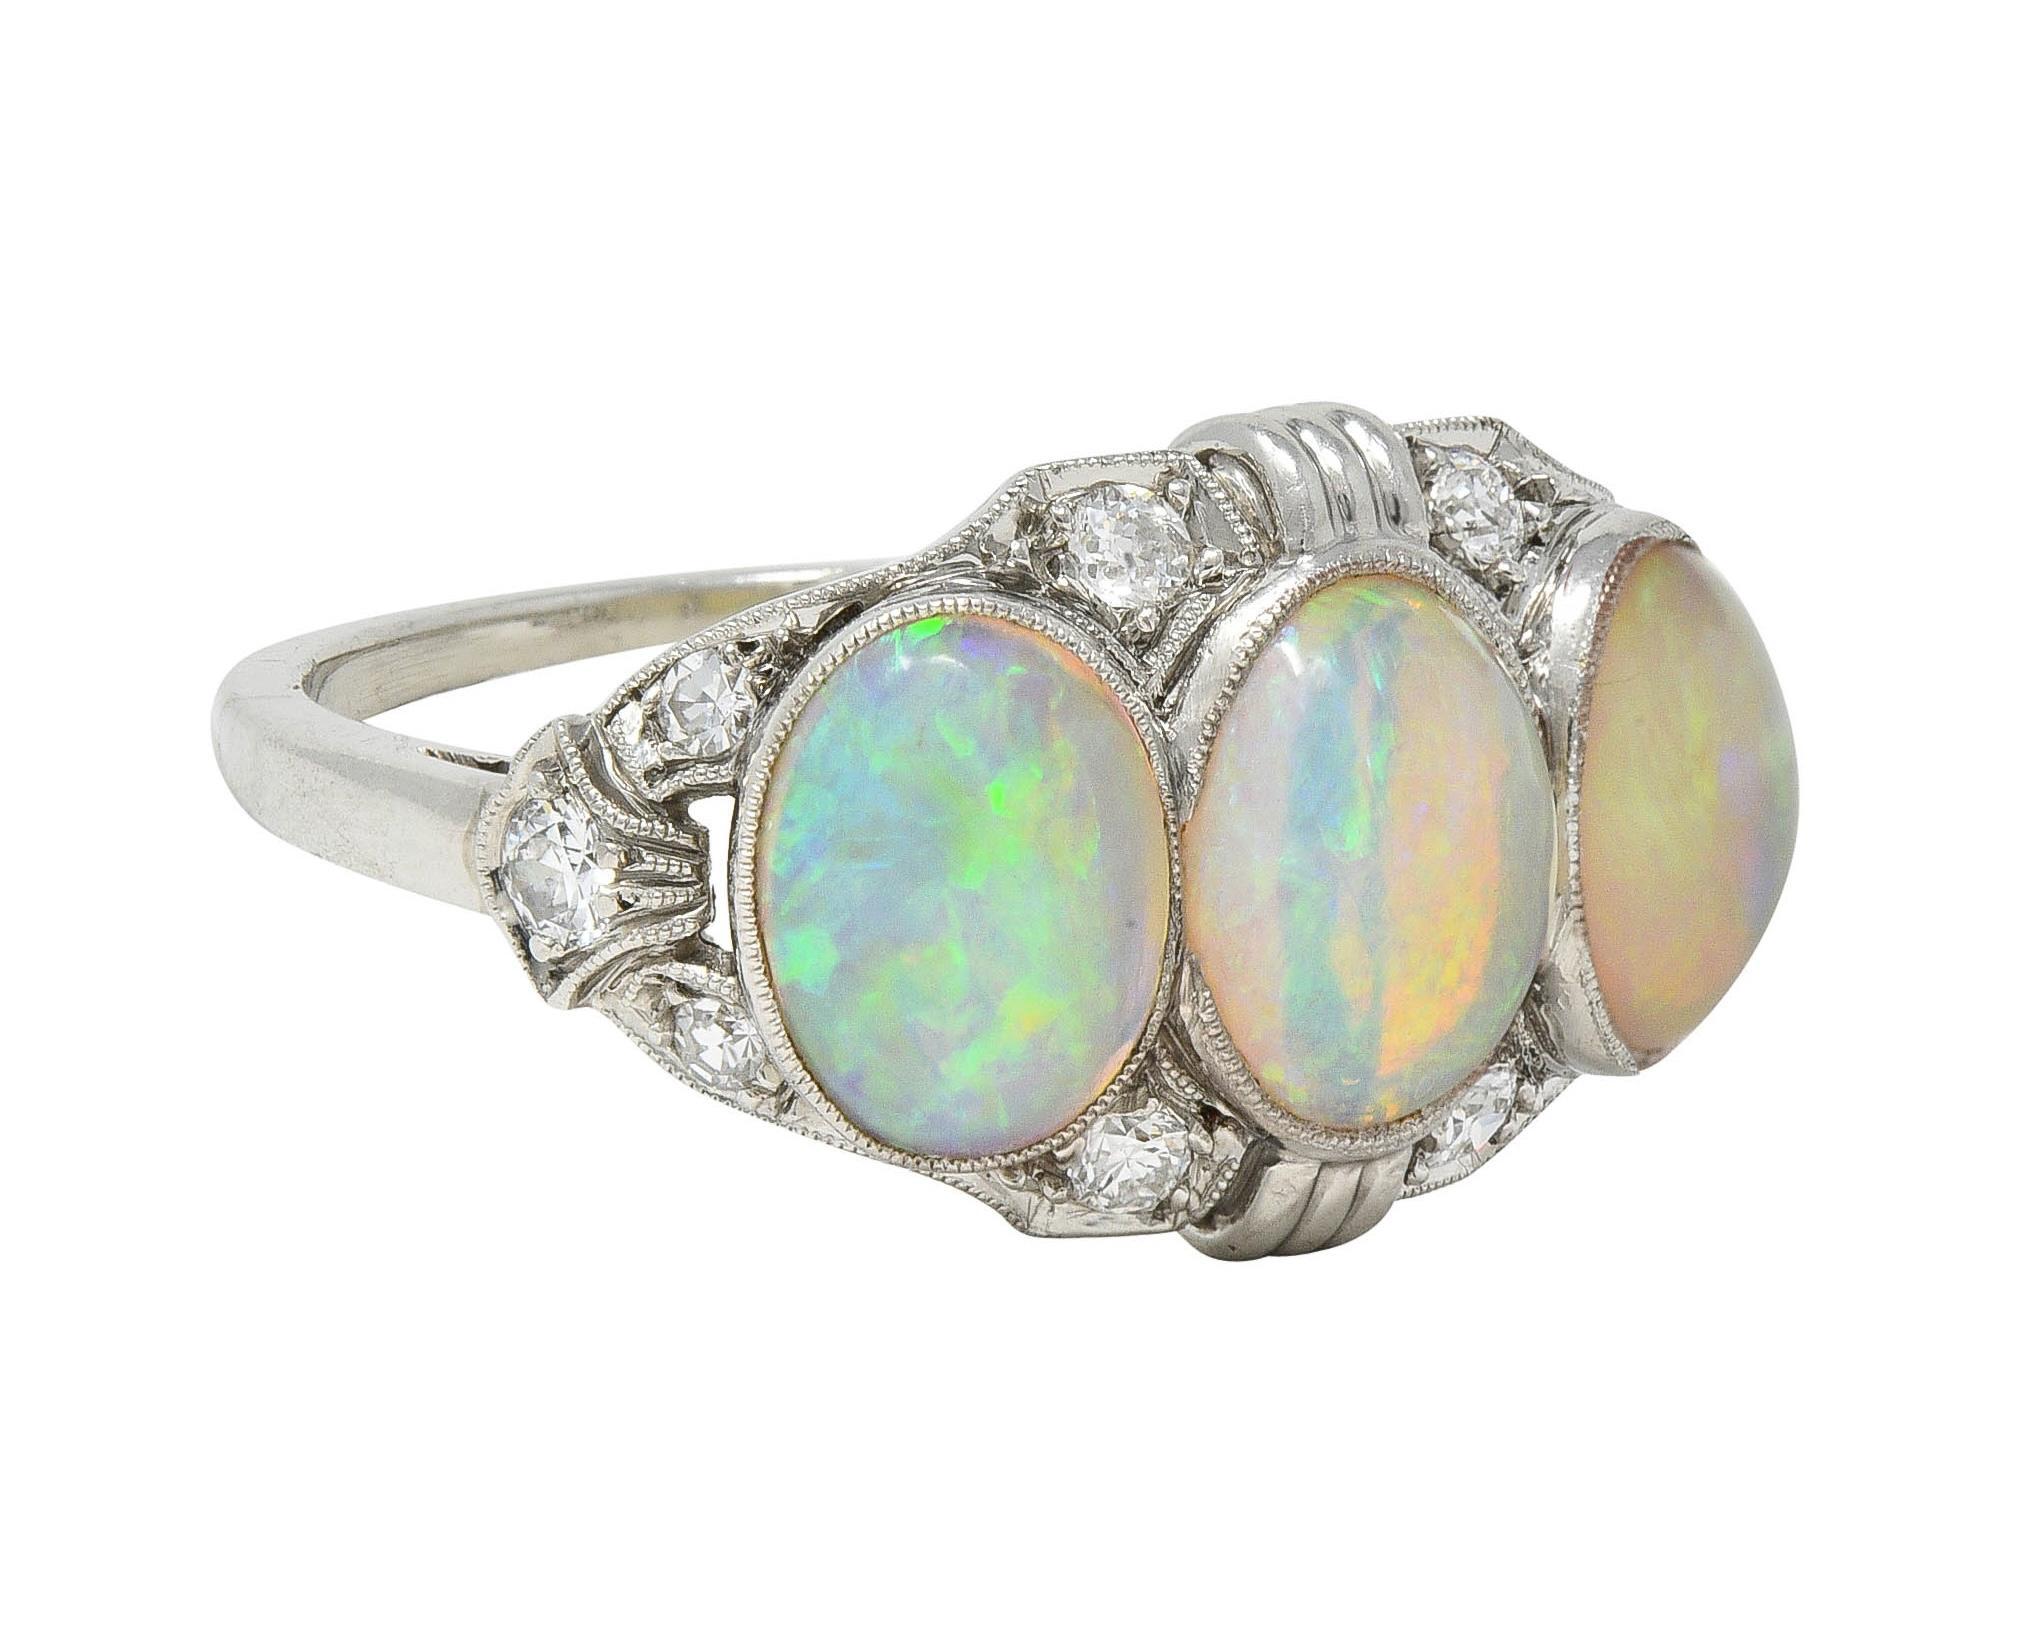 Trois cabochons d'opale de forme ovale sont sertis en chaton d'est en ouest.
Dimensions de 5,0 x 7,0 mm à 6,0 x 8,0 mm
Corps blanc translucide avec jeu de couleurs spectrales
Accentué par des diamants de taille unique sertis en perle sur l'ensemble